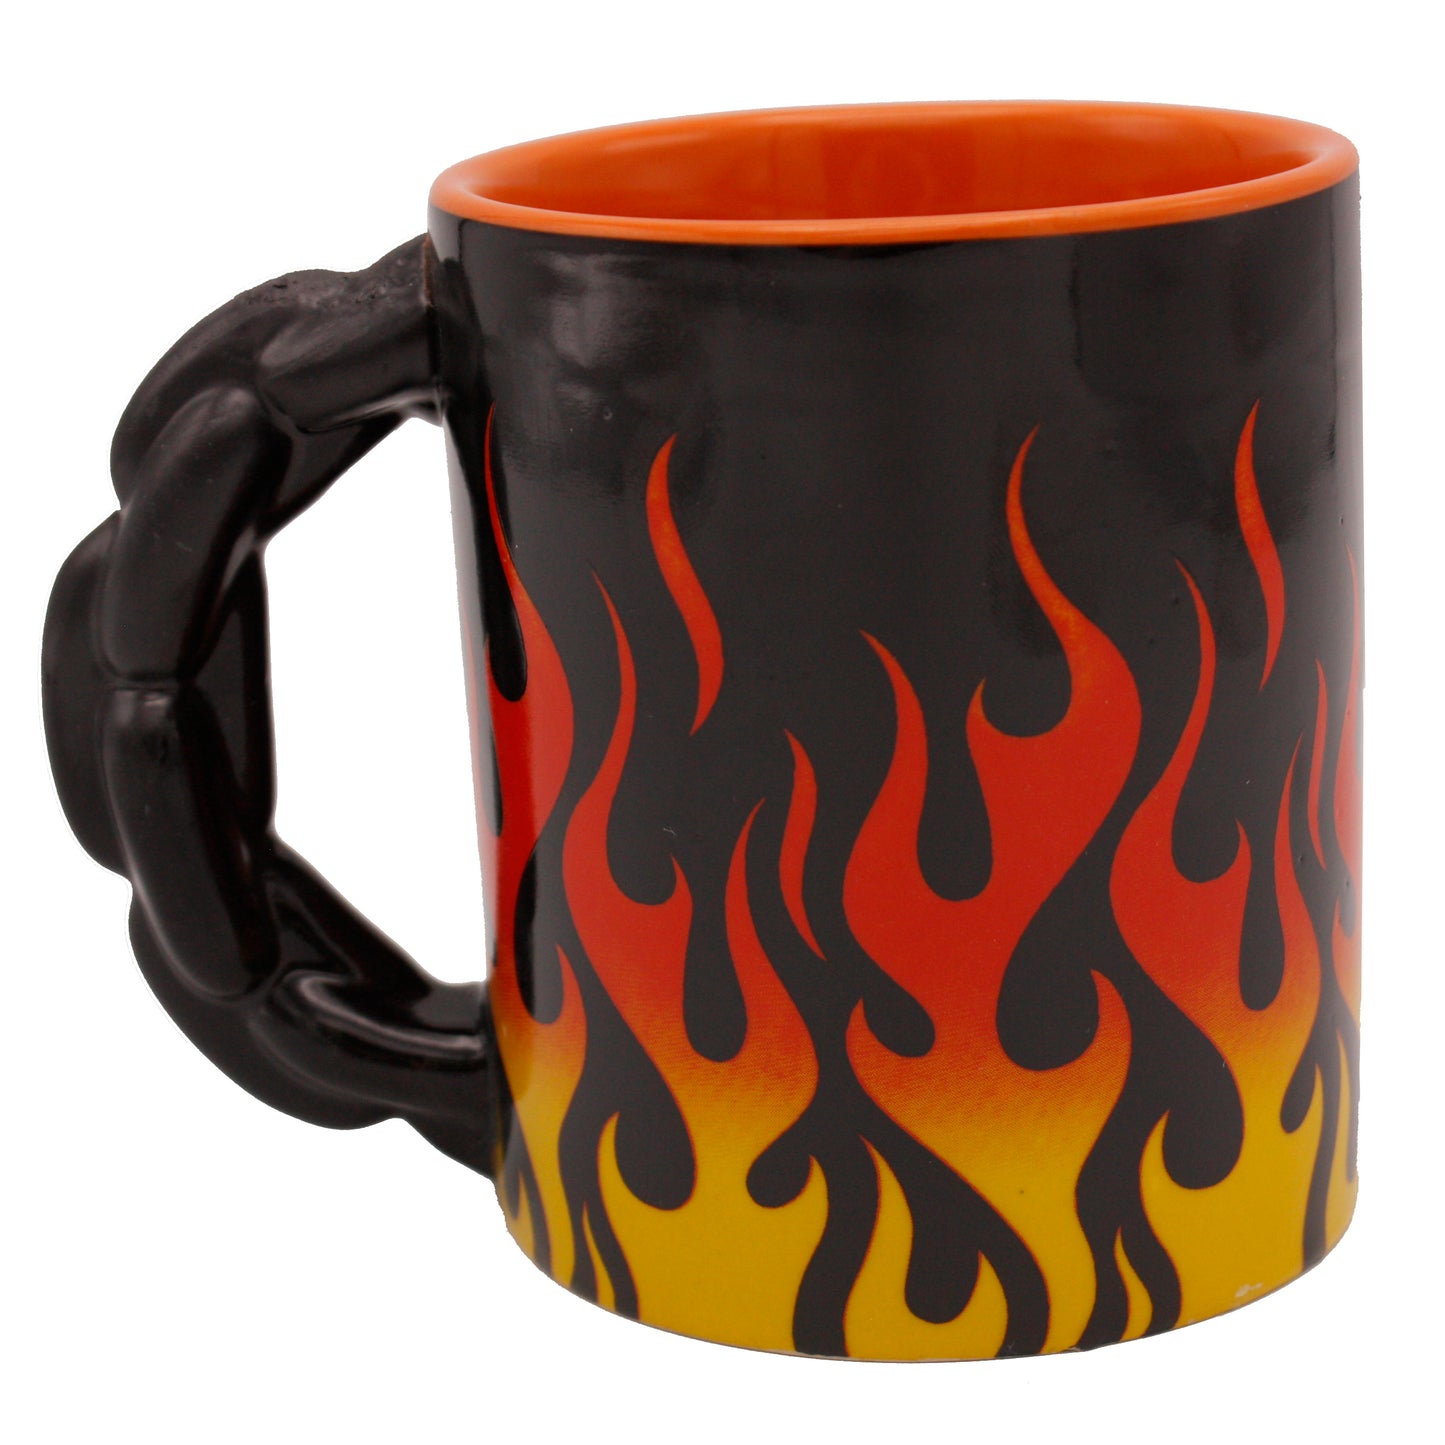 Red Flame Mug